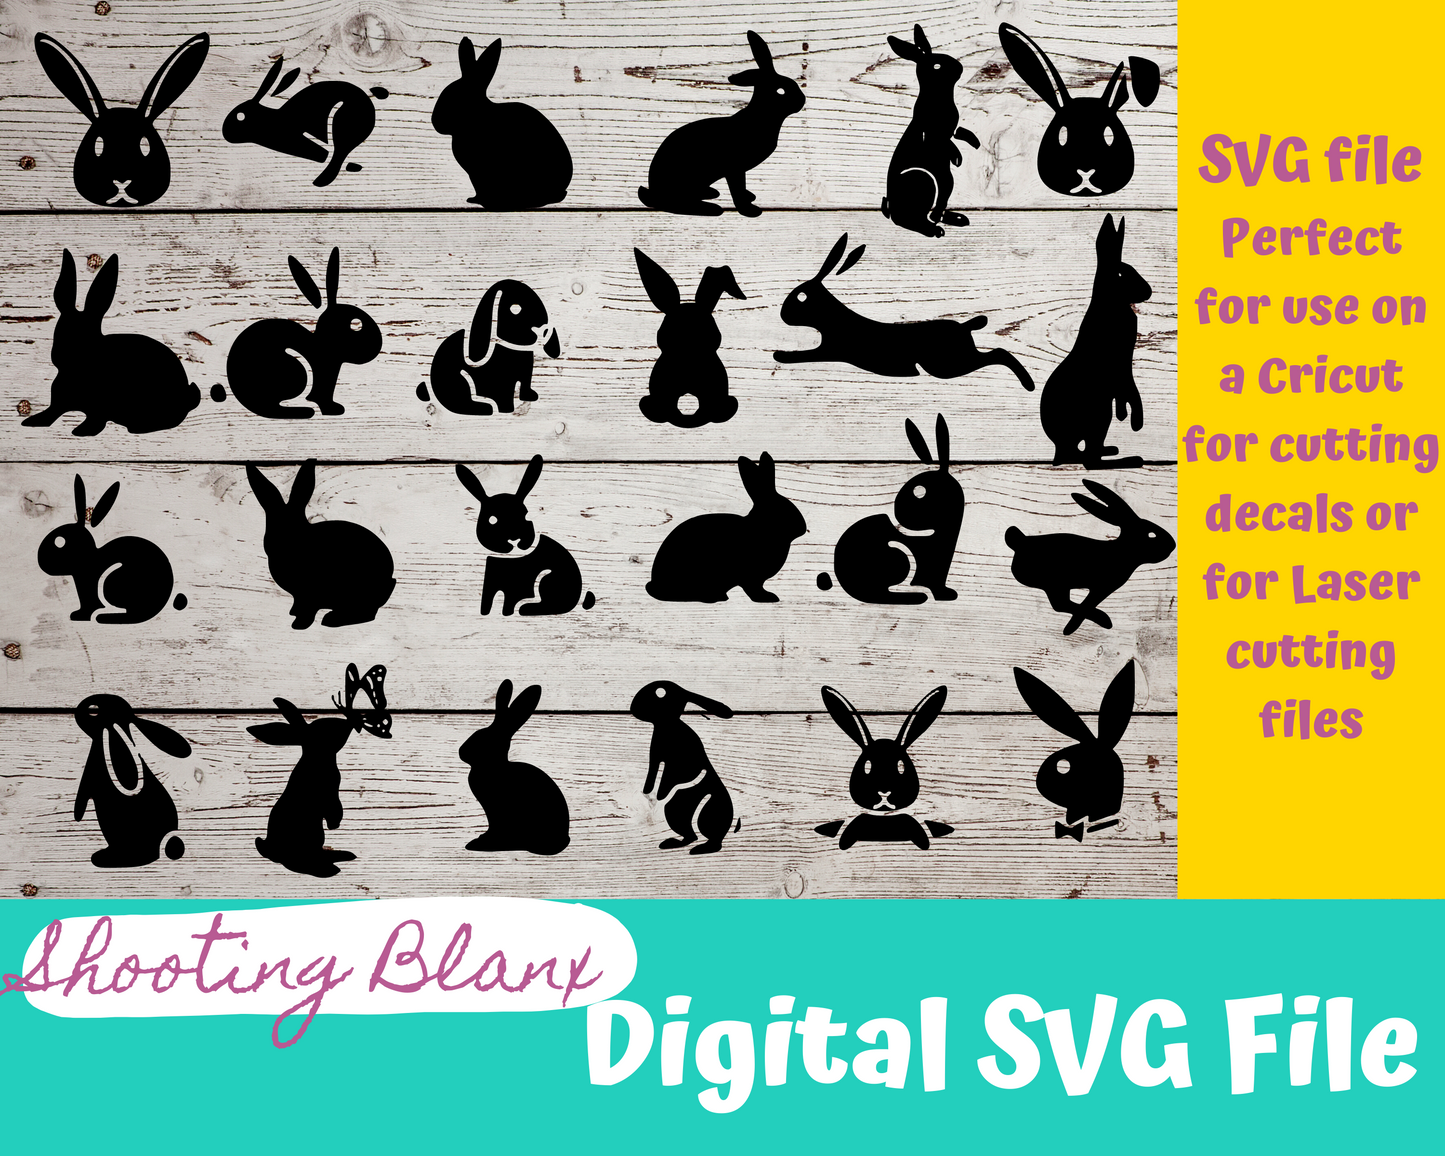 Bunny SVG